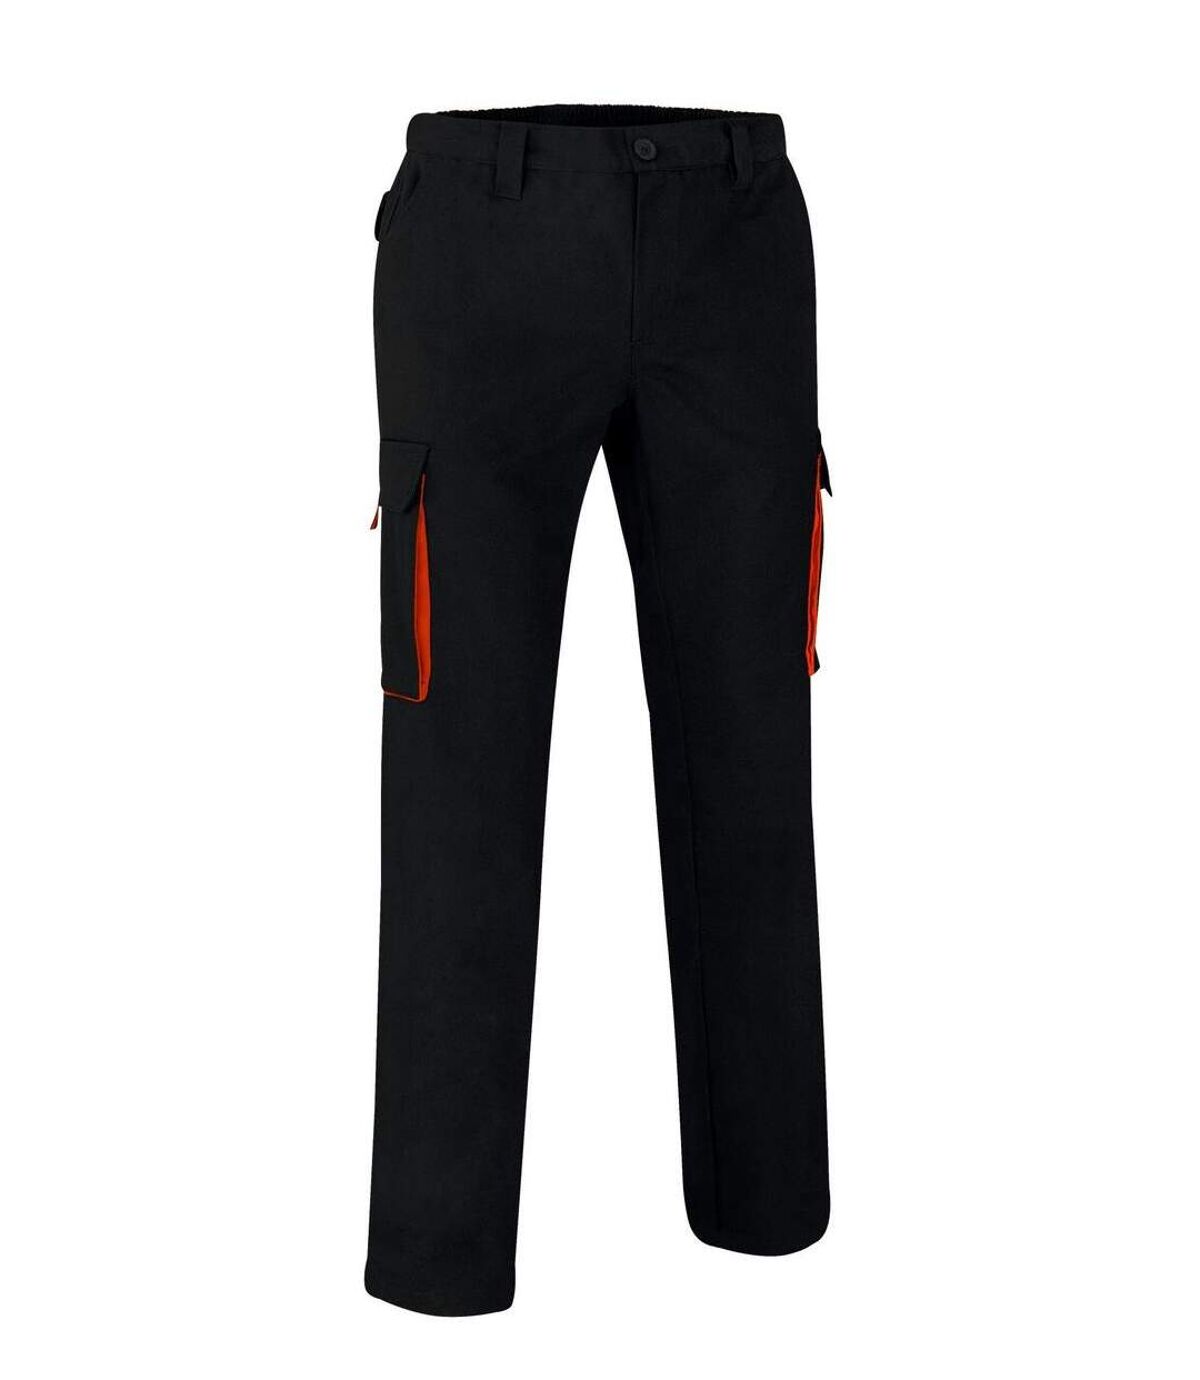 Pantalon de travail homme - THUNDER - noir et orange